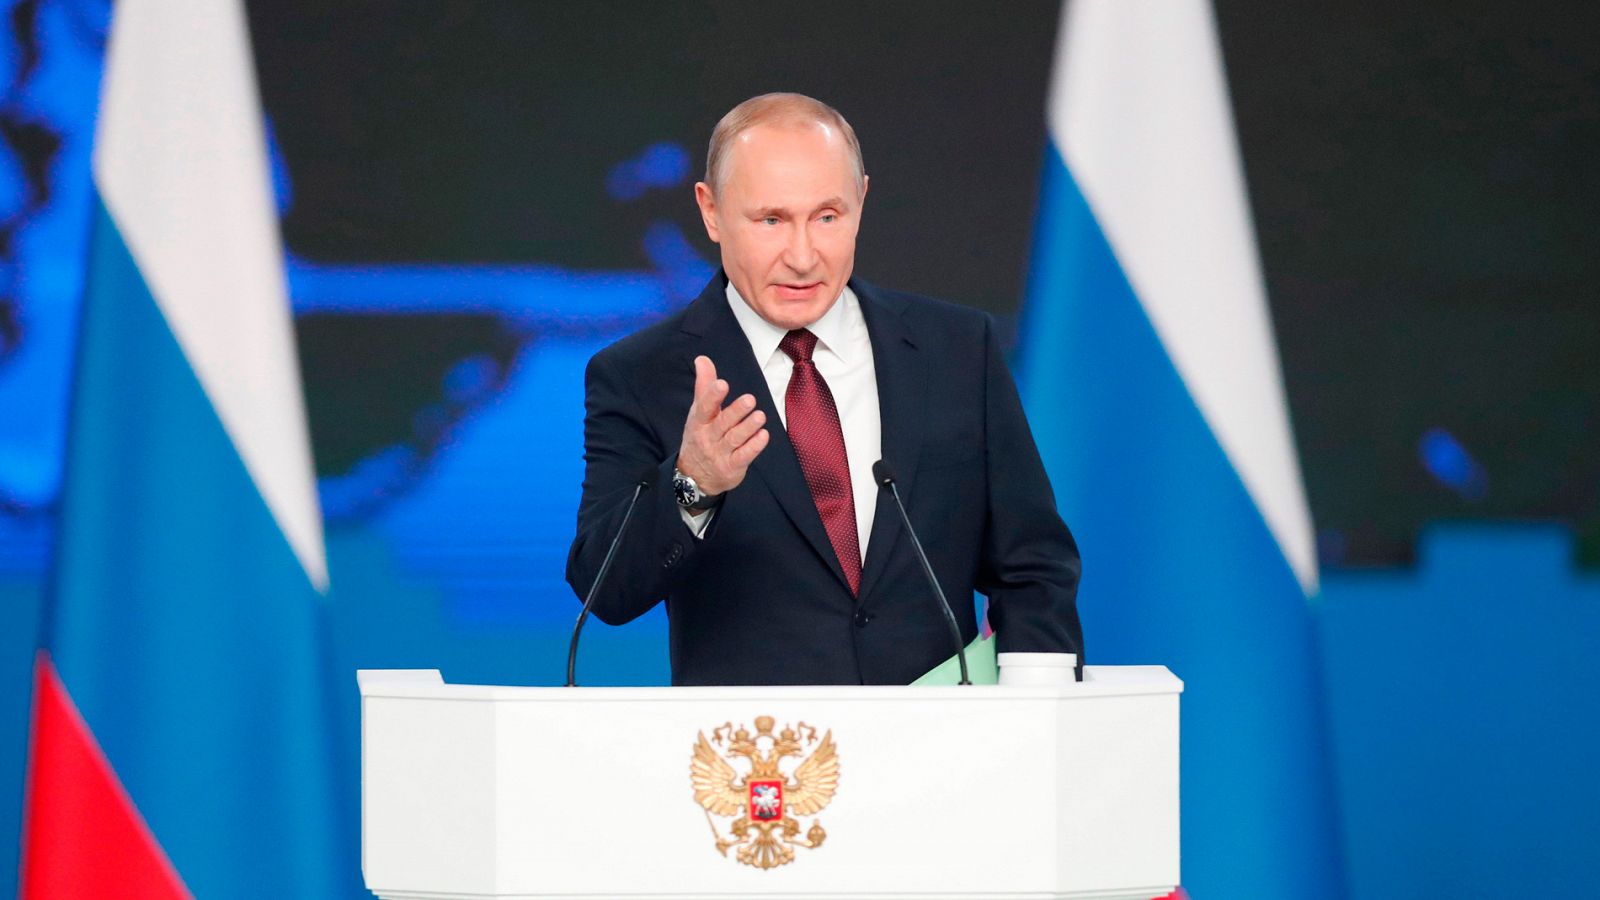 El presidente ruso, Vladimir Putin, presenta su informe anual sobre el estado de la nación